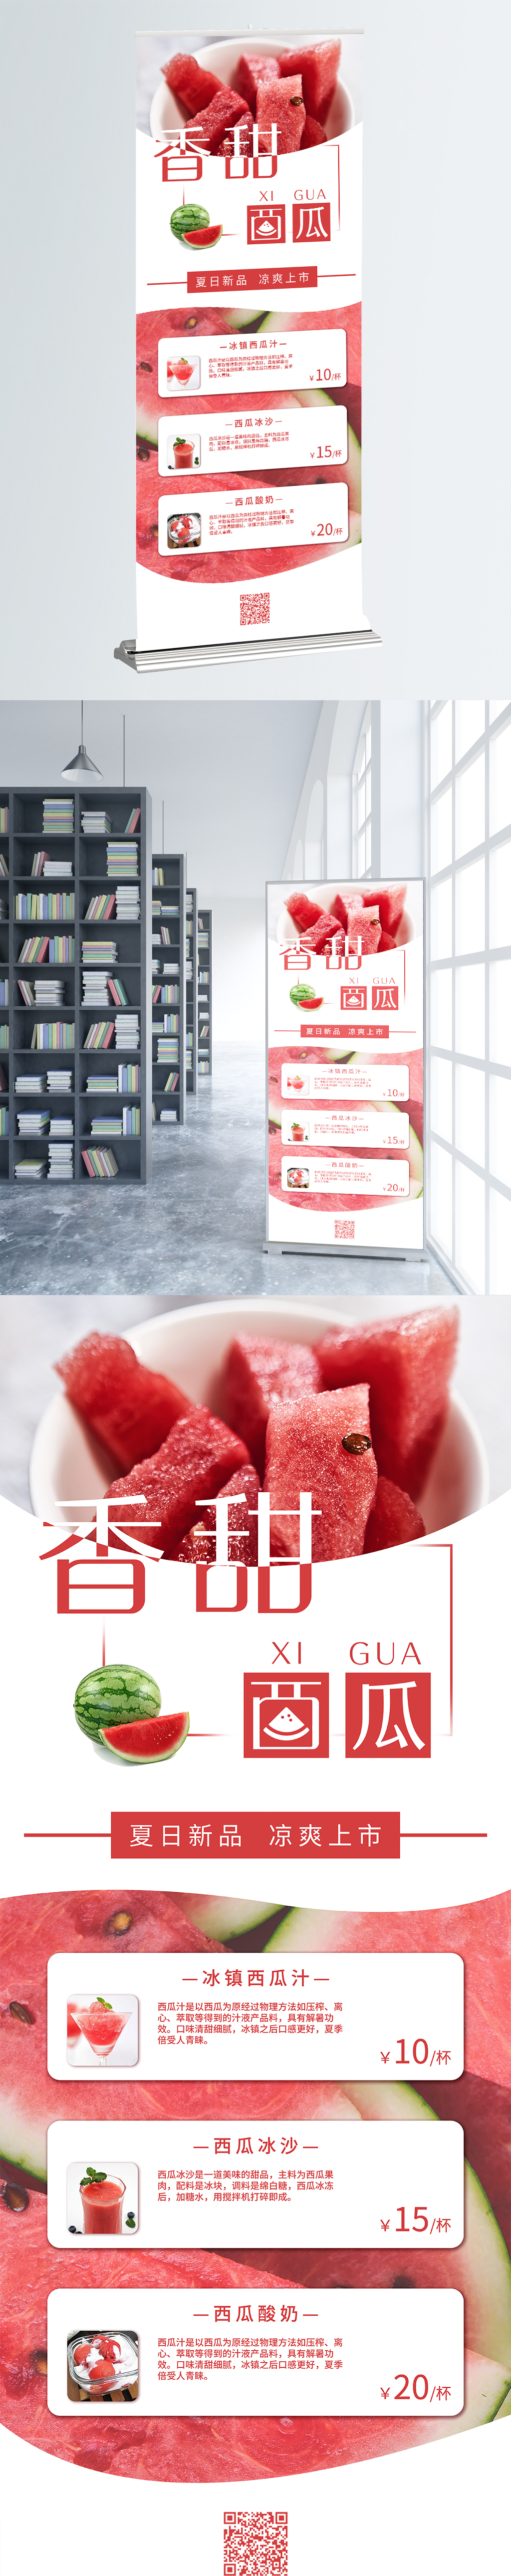 香甜西瓜促销宣传水果展架图片